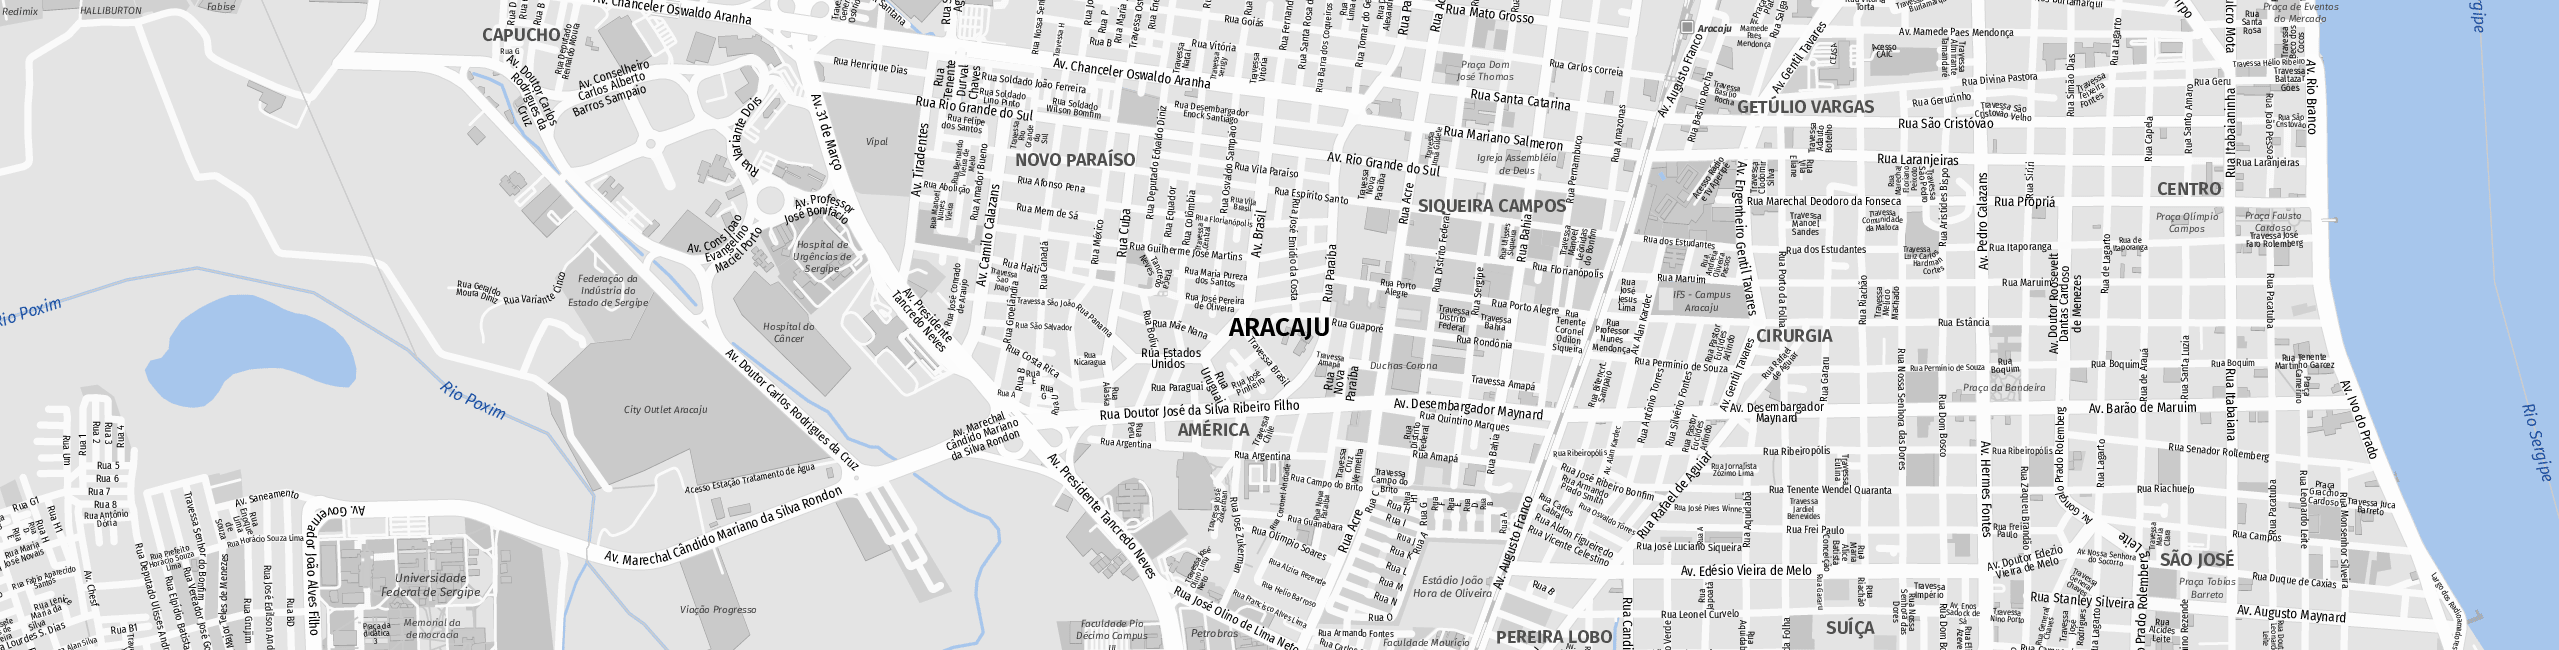 Stadtplan Aracaju zum Downloaden.